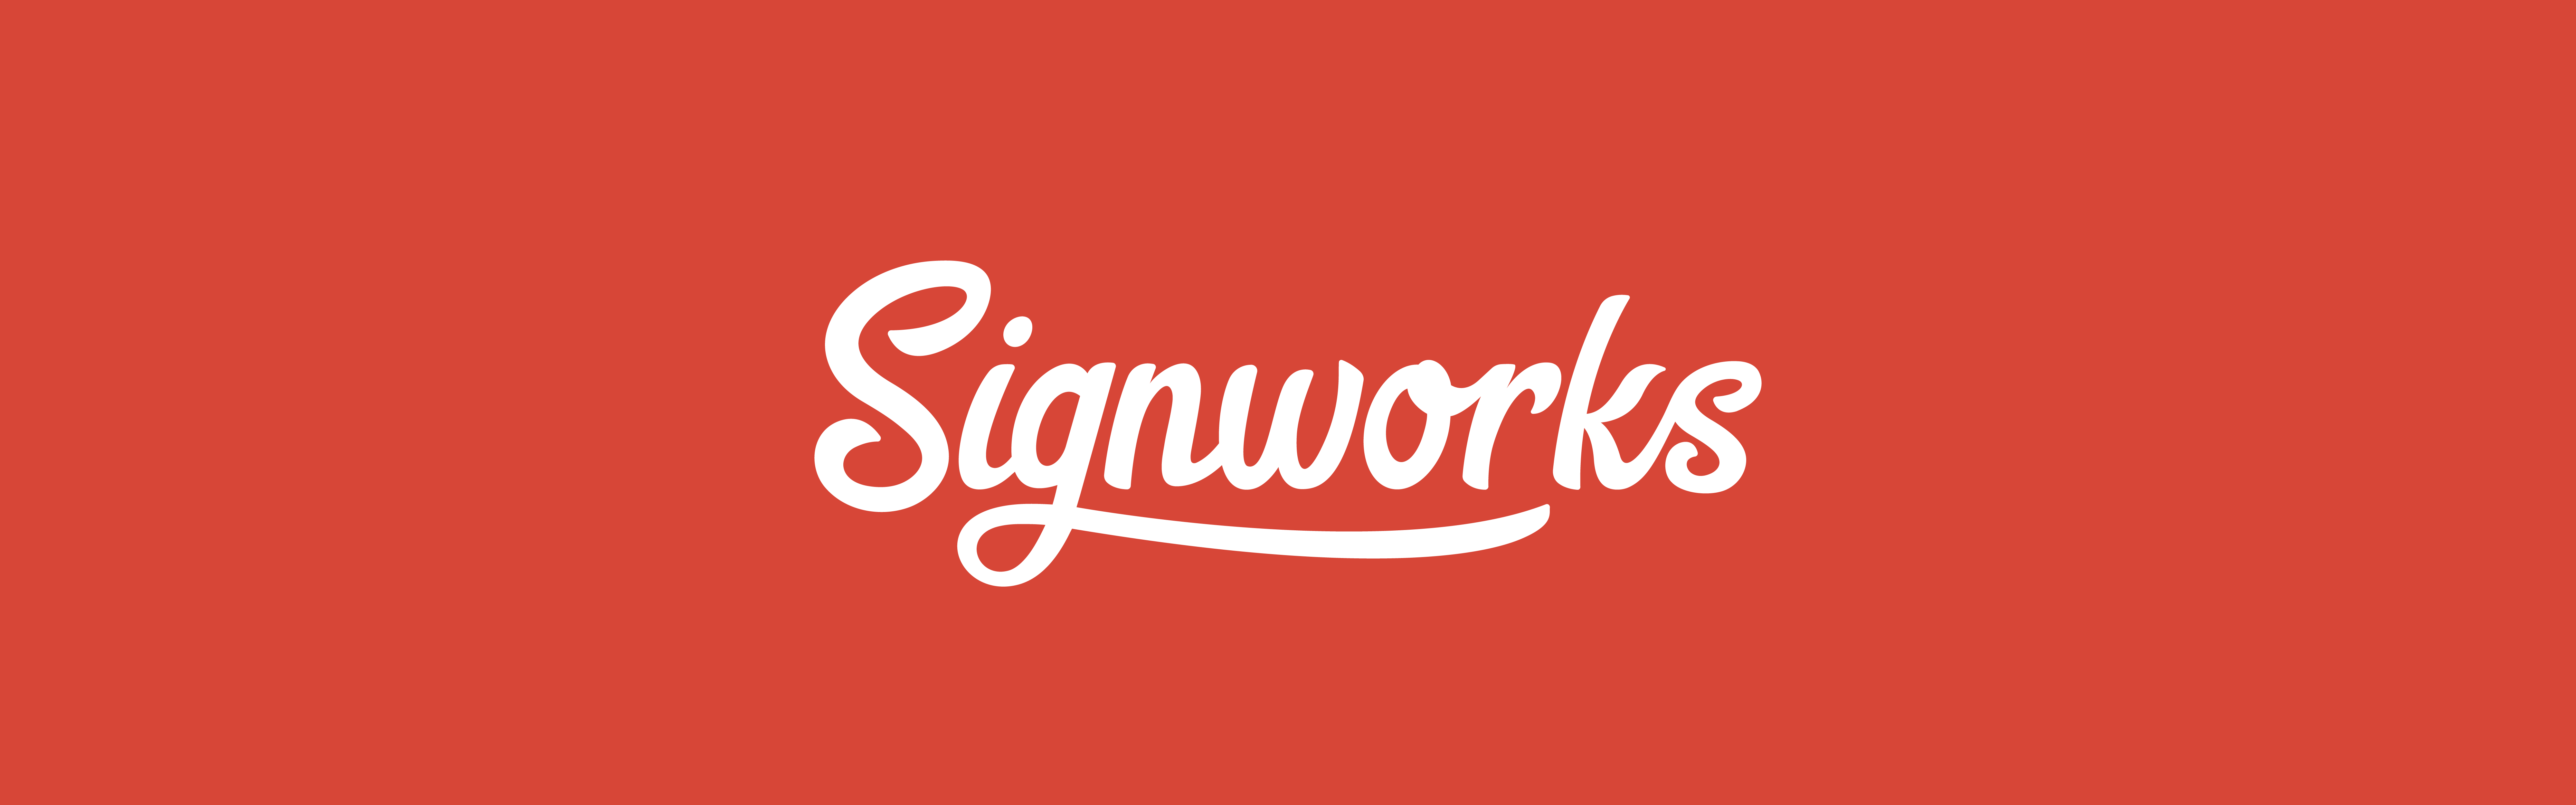 Signworks logo design